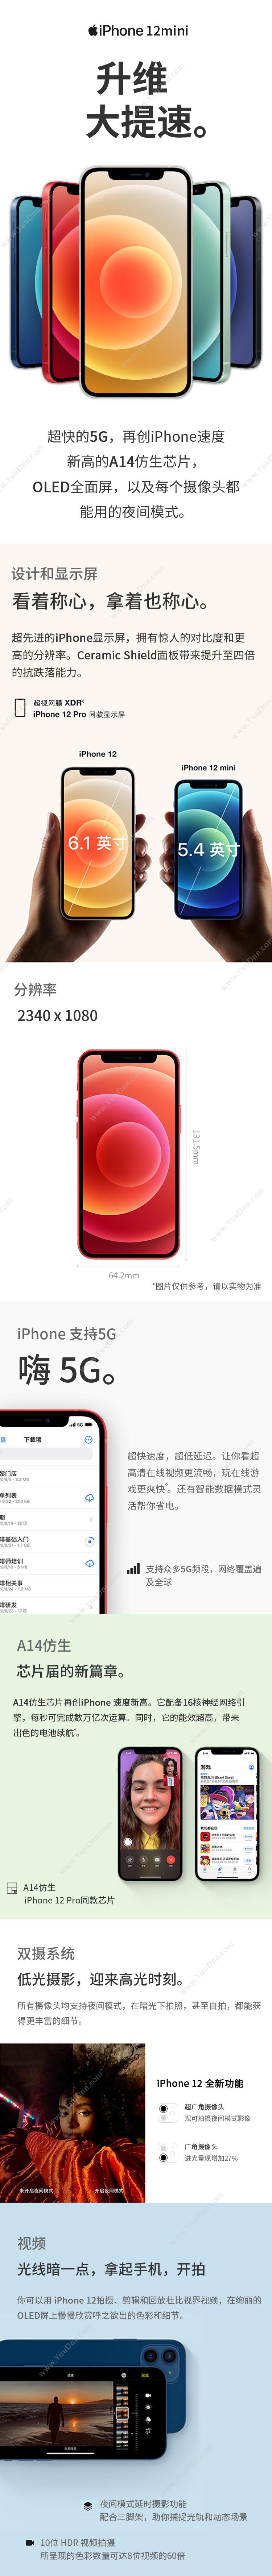 苹果 Apple iPhone 12Mini (MG863CH/A) 128G 红色 移动联通电信5G手机 手机